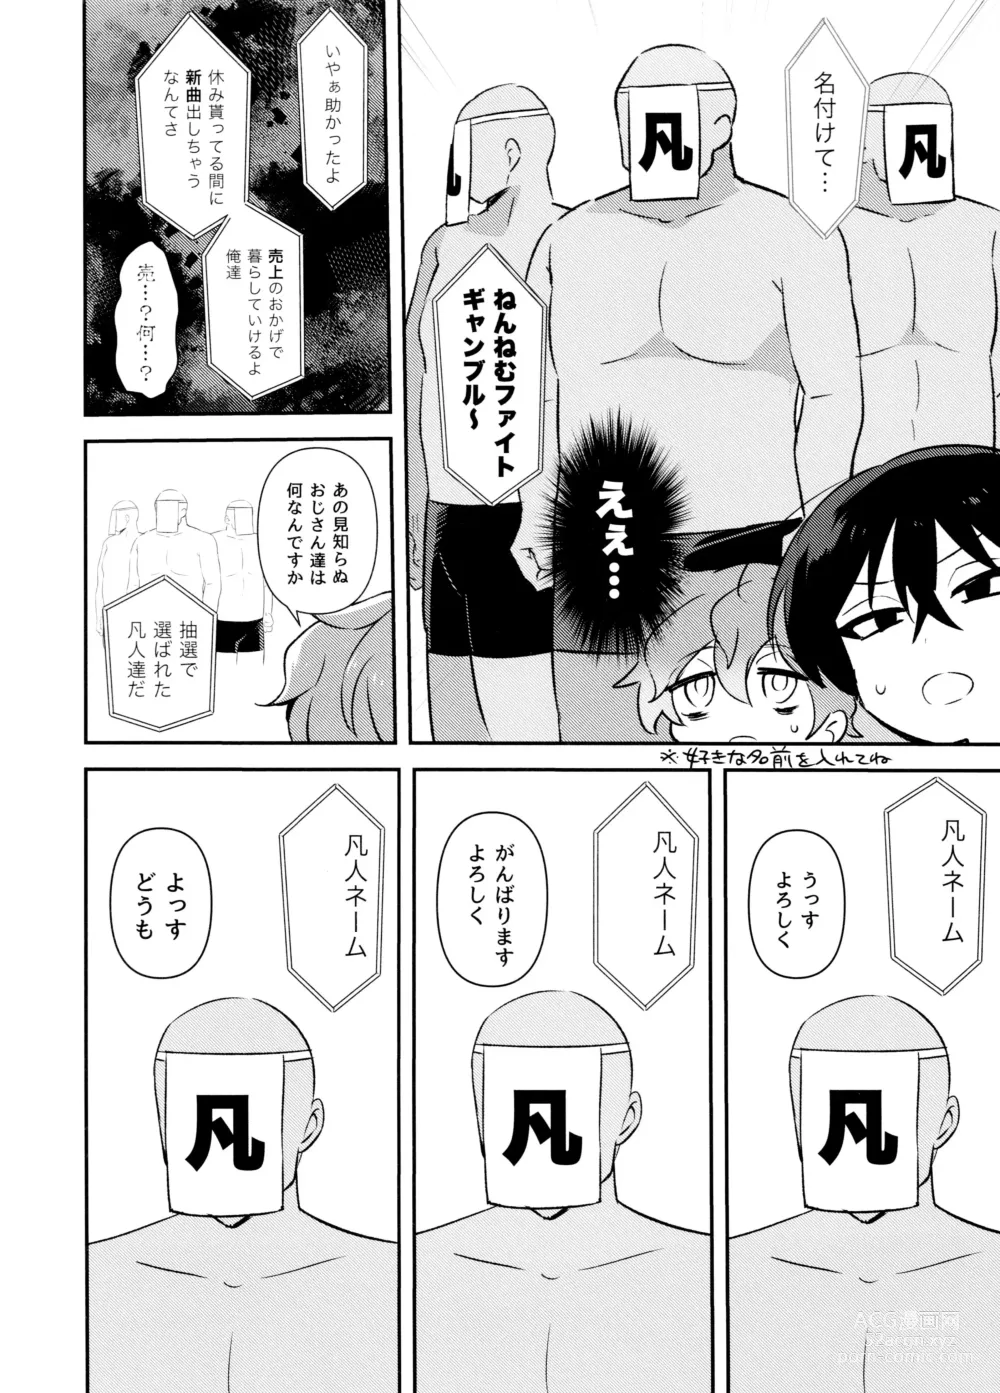 Page 5 of doujinshi Nennemu Fight Gambling